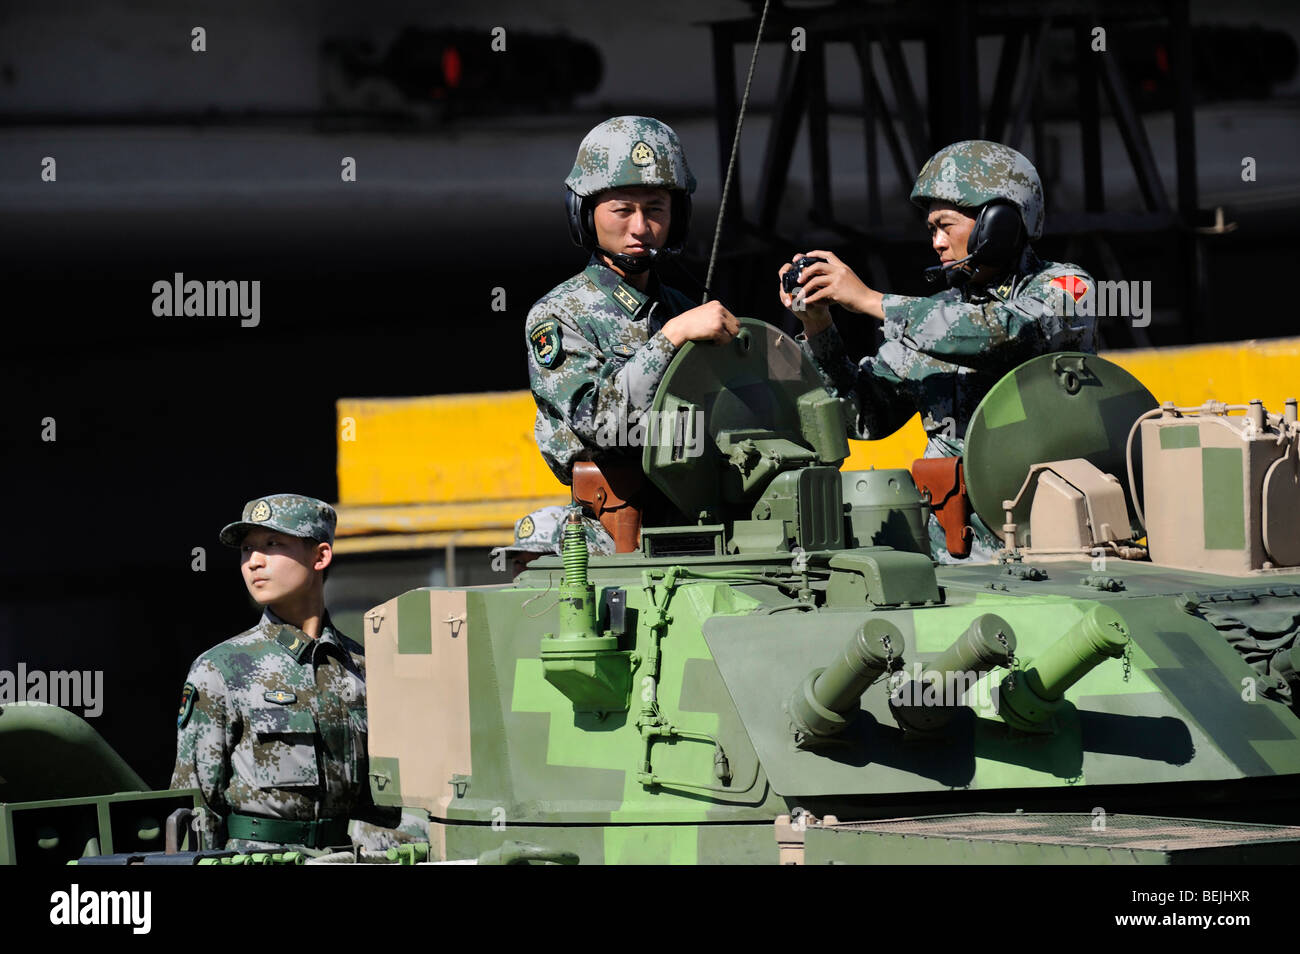 Défilé militaire marquant Chines 60e anniversaire de la République populaire de Chine, les soldats sur un réservoir. 01-Oct-2009 Banque D'Images